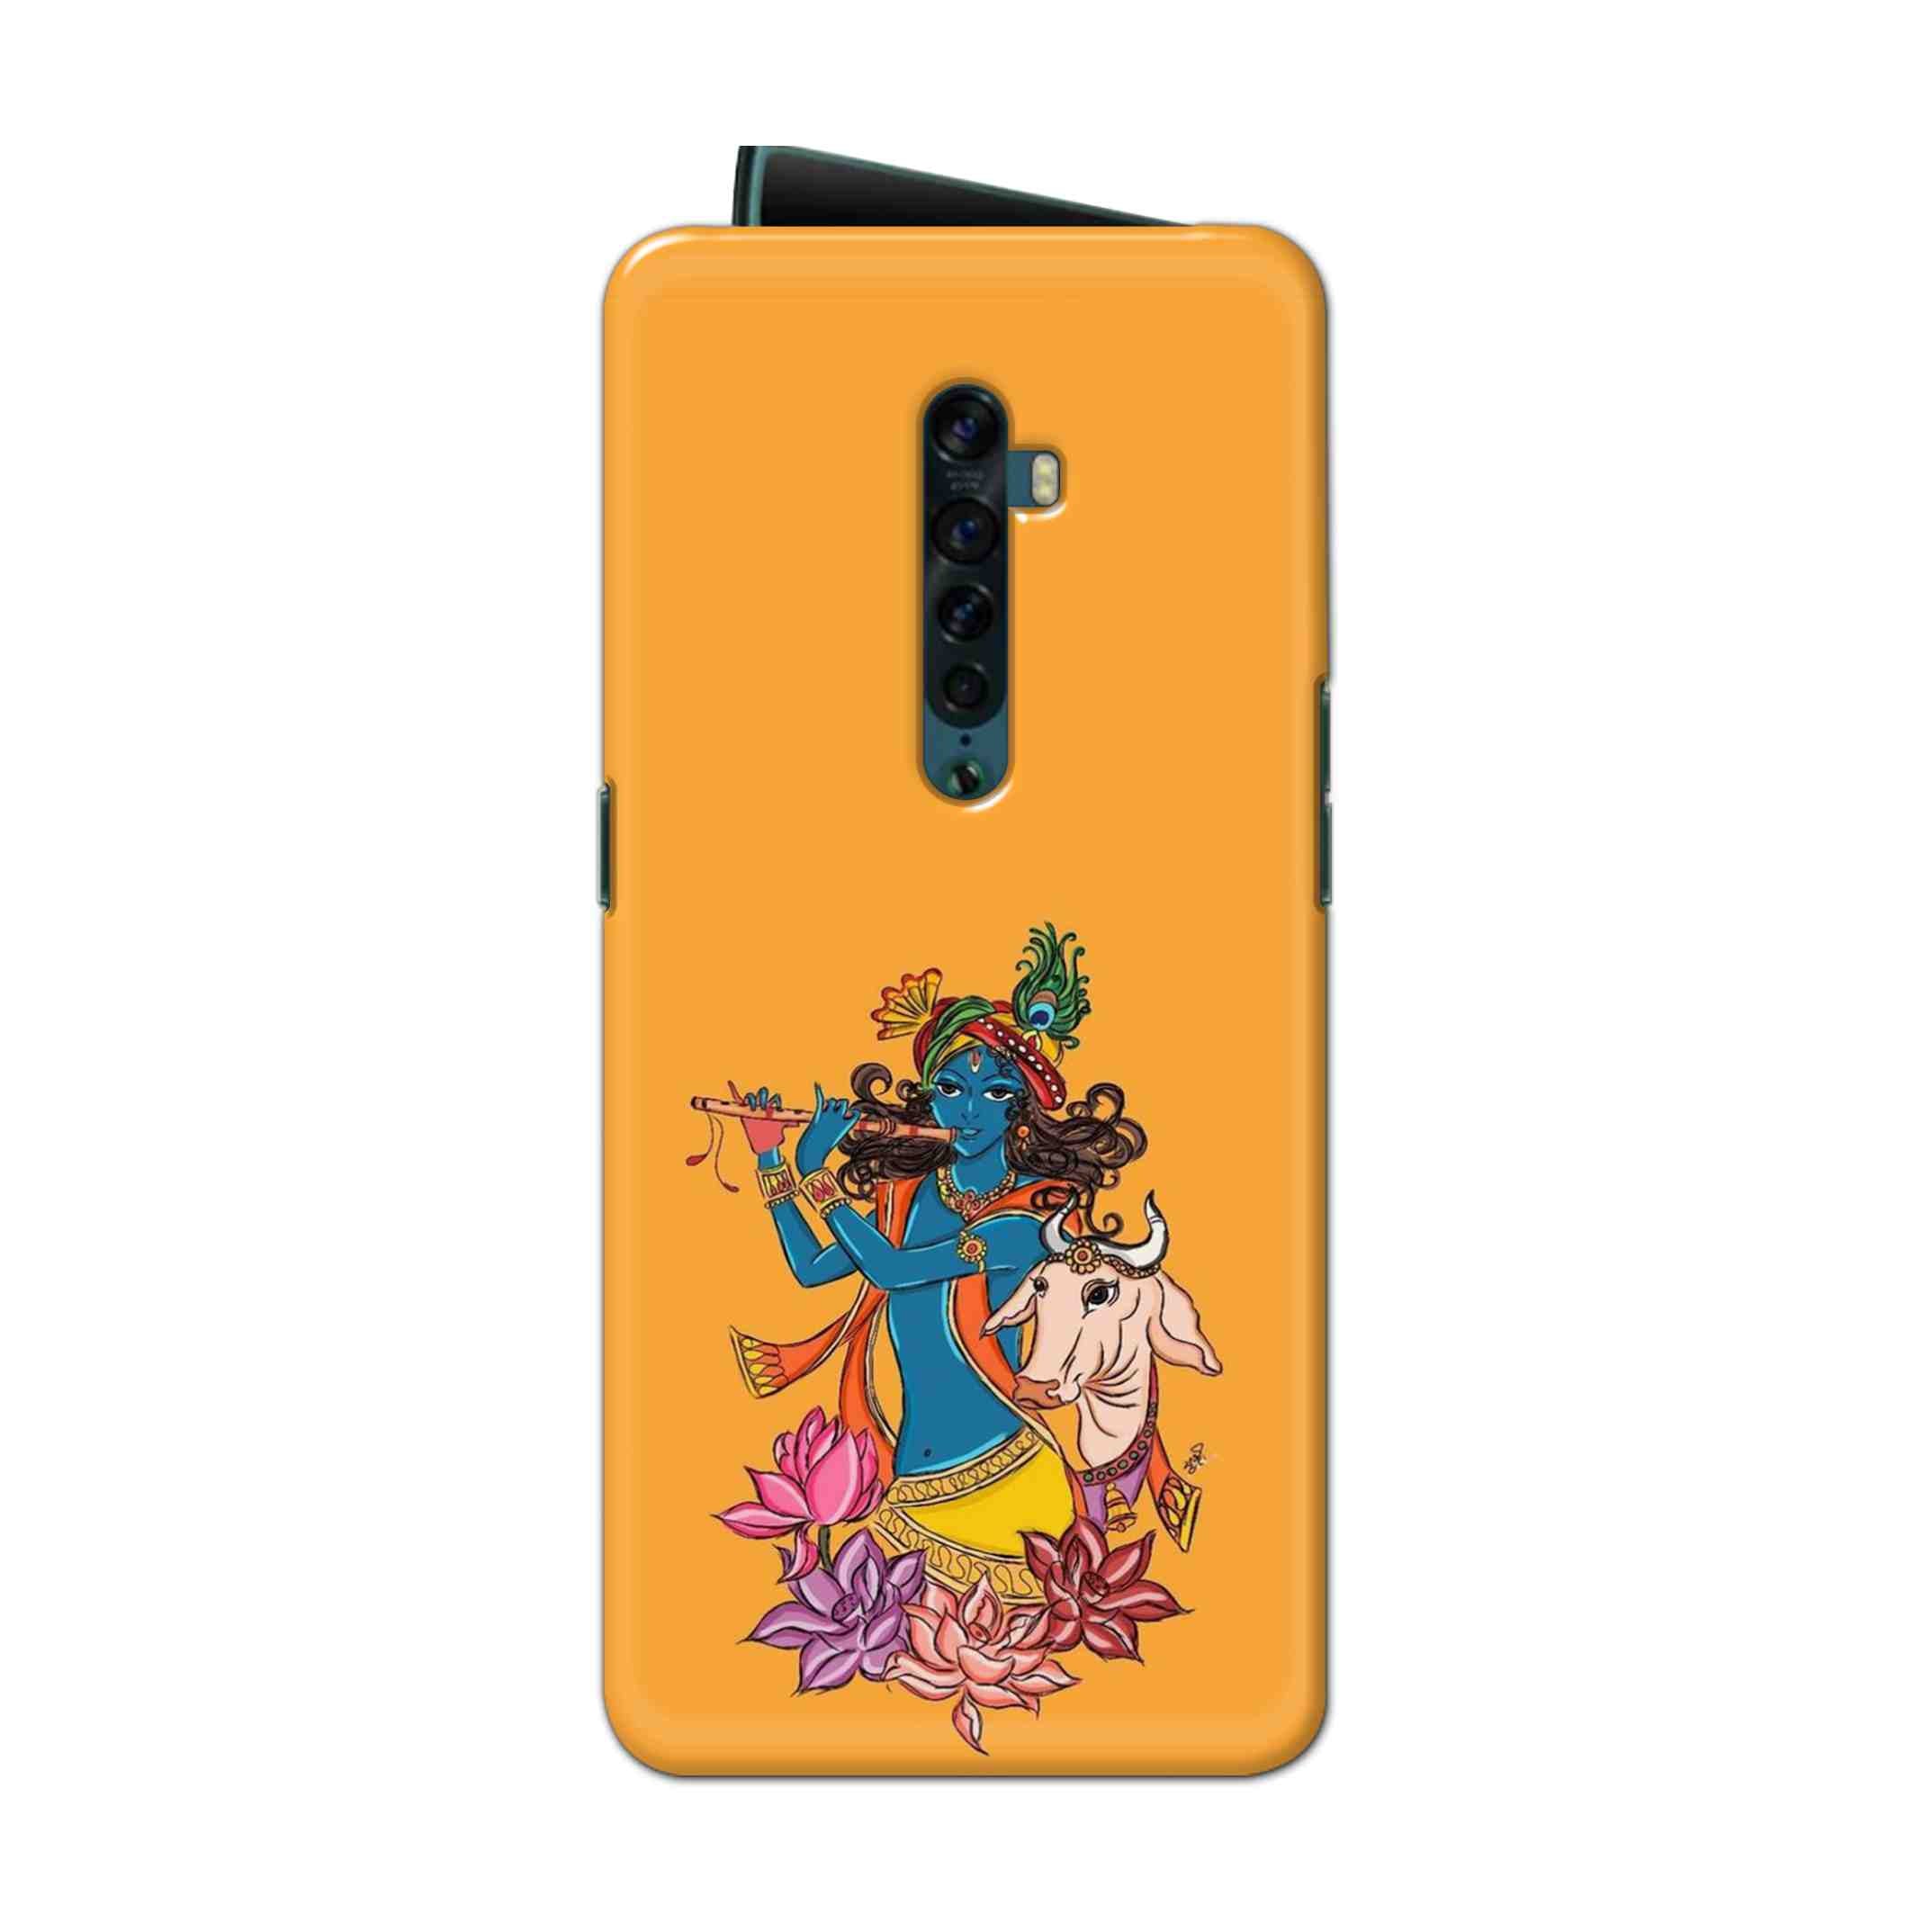 Buy Radhe Krishna Hard Back Mobile Phone Case Cover For Oppo Reno 2 Online